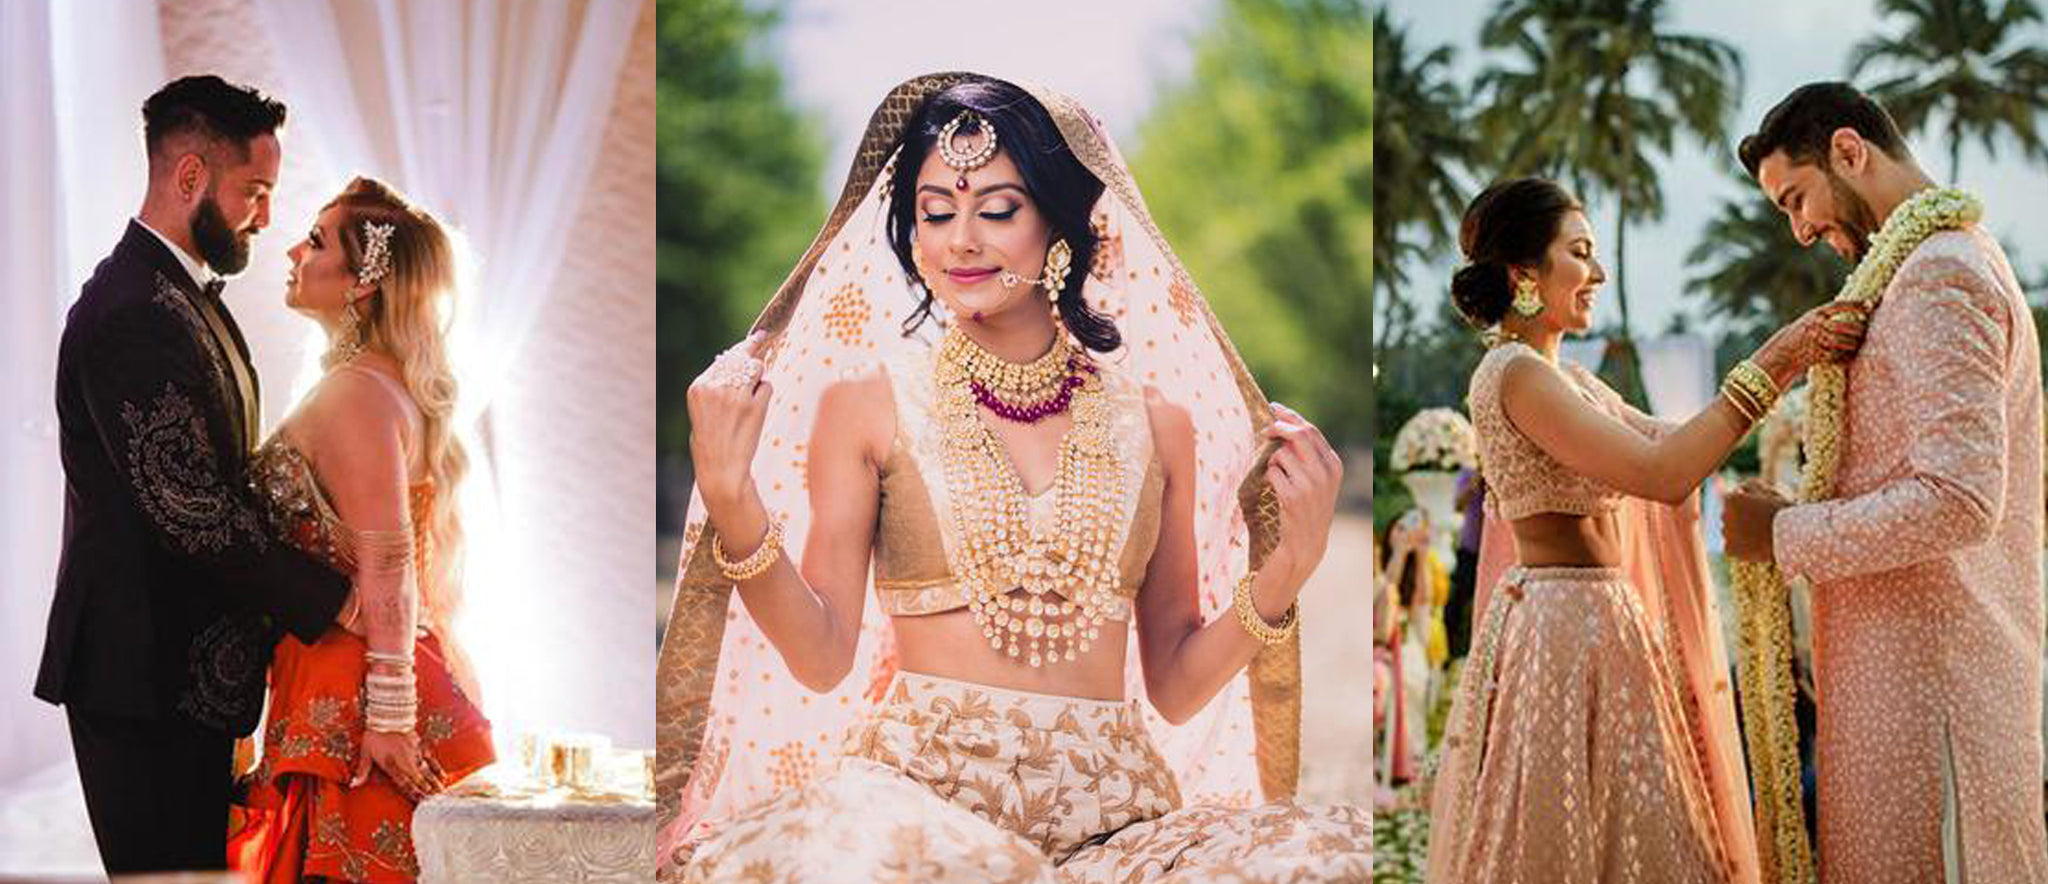 Seattle Indian Wedding Photographer | James Thomas Long Photography | Anish  and Nirali | Part I | Wedding & Family Photographer | Seattle WA | James  Thomas Long Photography